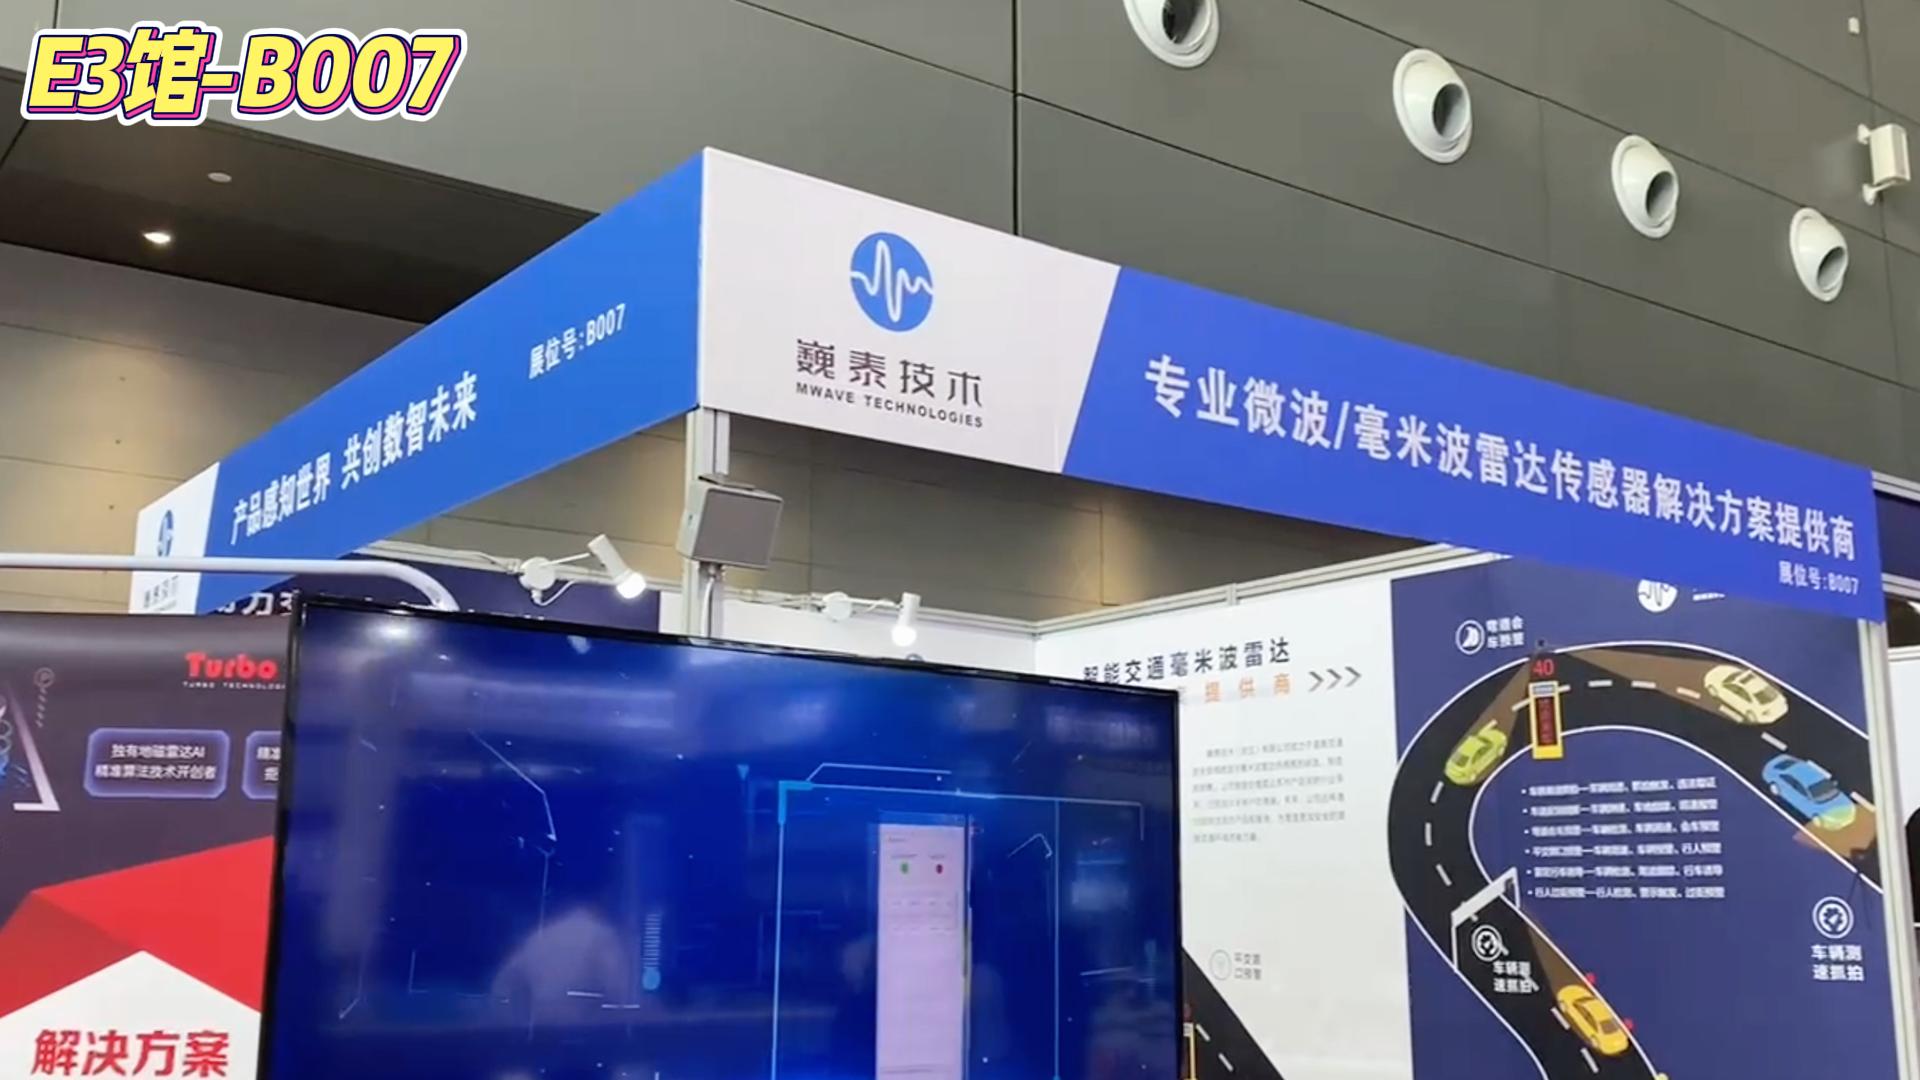 #产品方案 巍泰技术（武汉）有限公司
微波/毫米波雷达传感器解决方案提供商